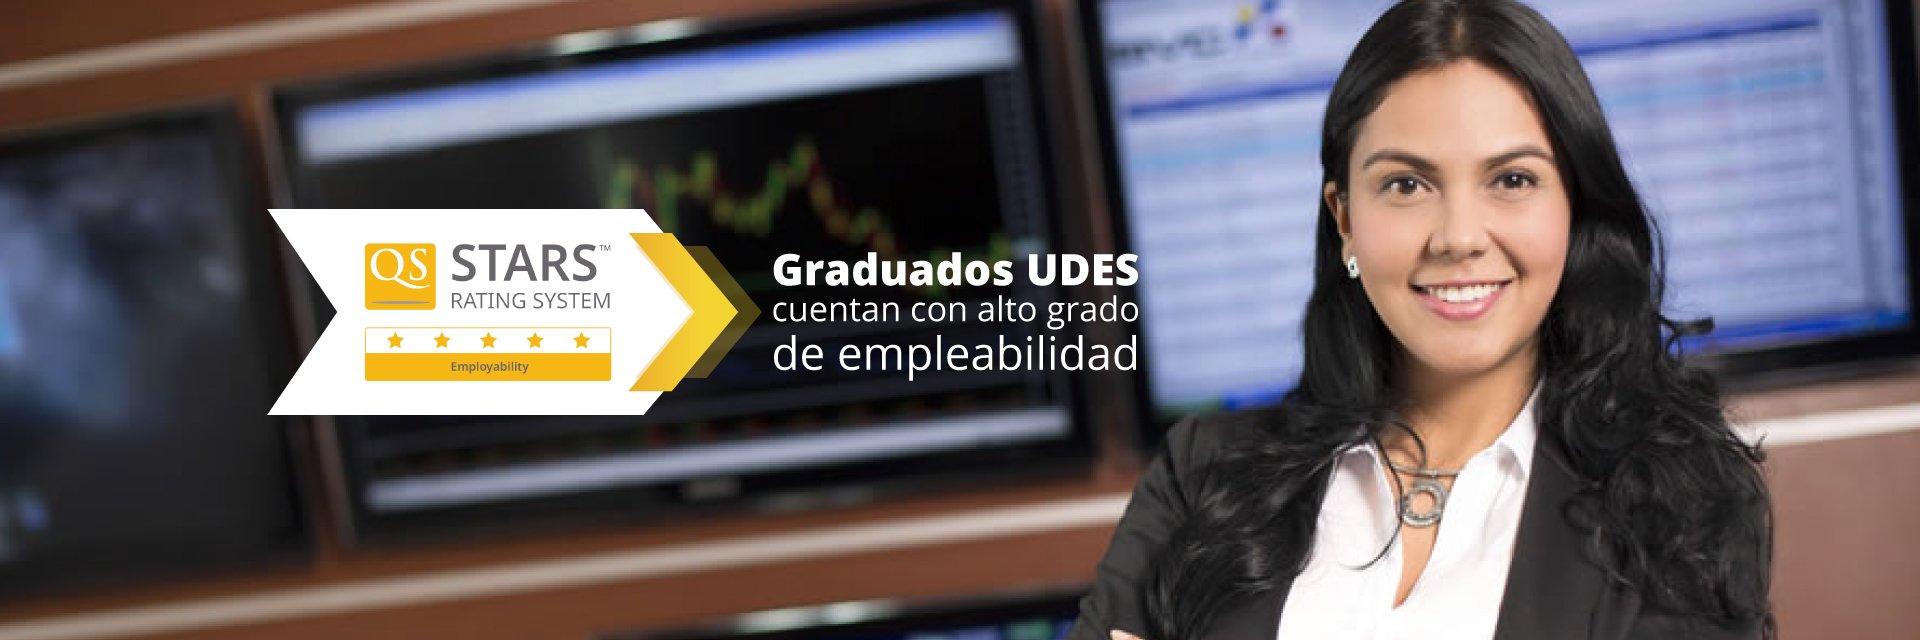 UDES obtiene 5 estrellas en empleabilidad de sus graduados en QS Stars